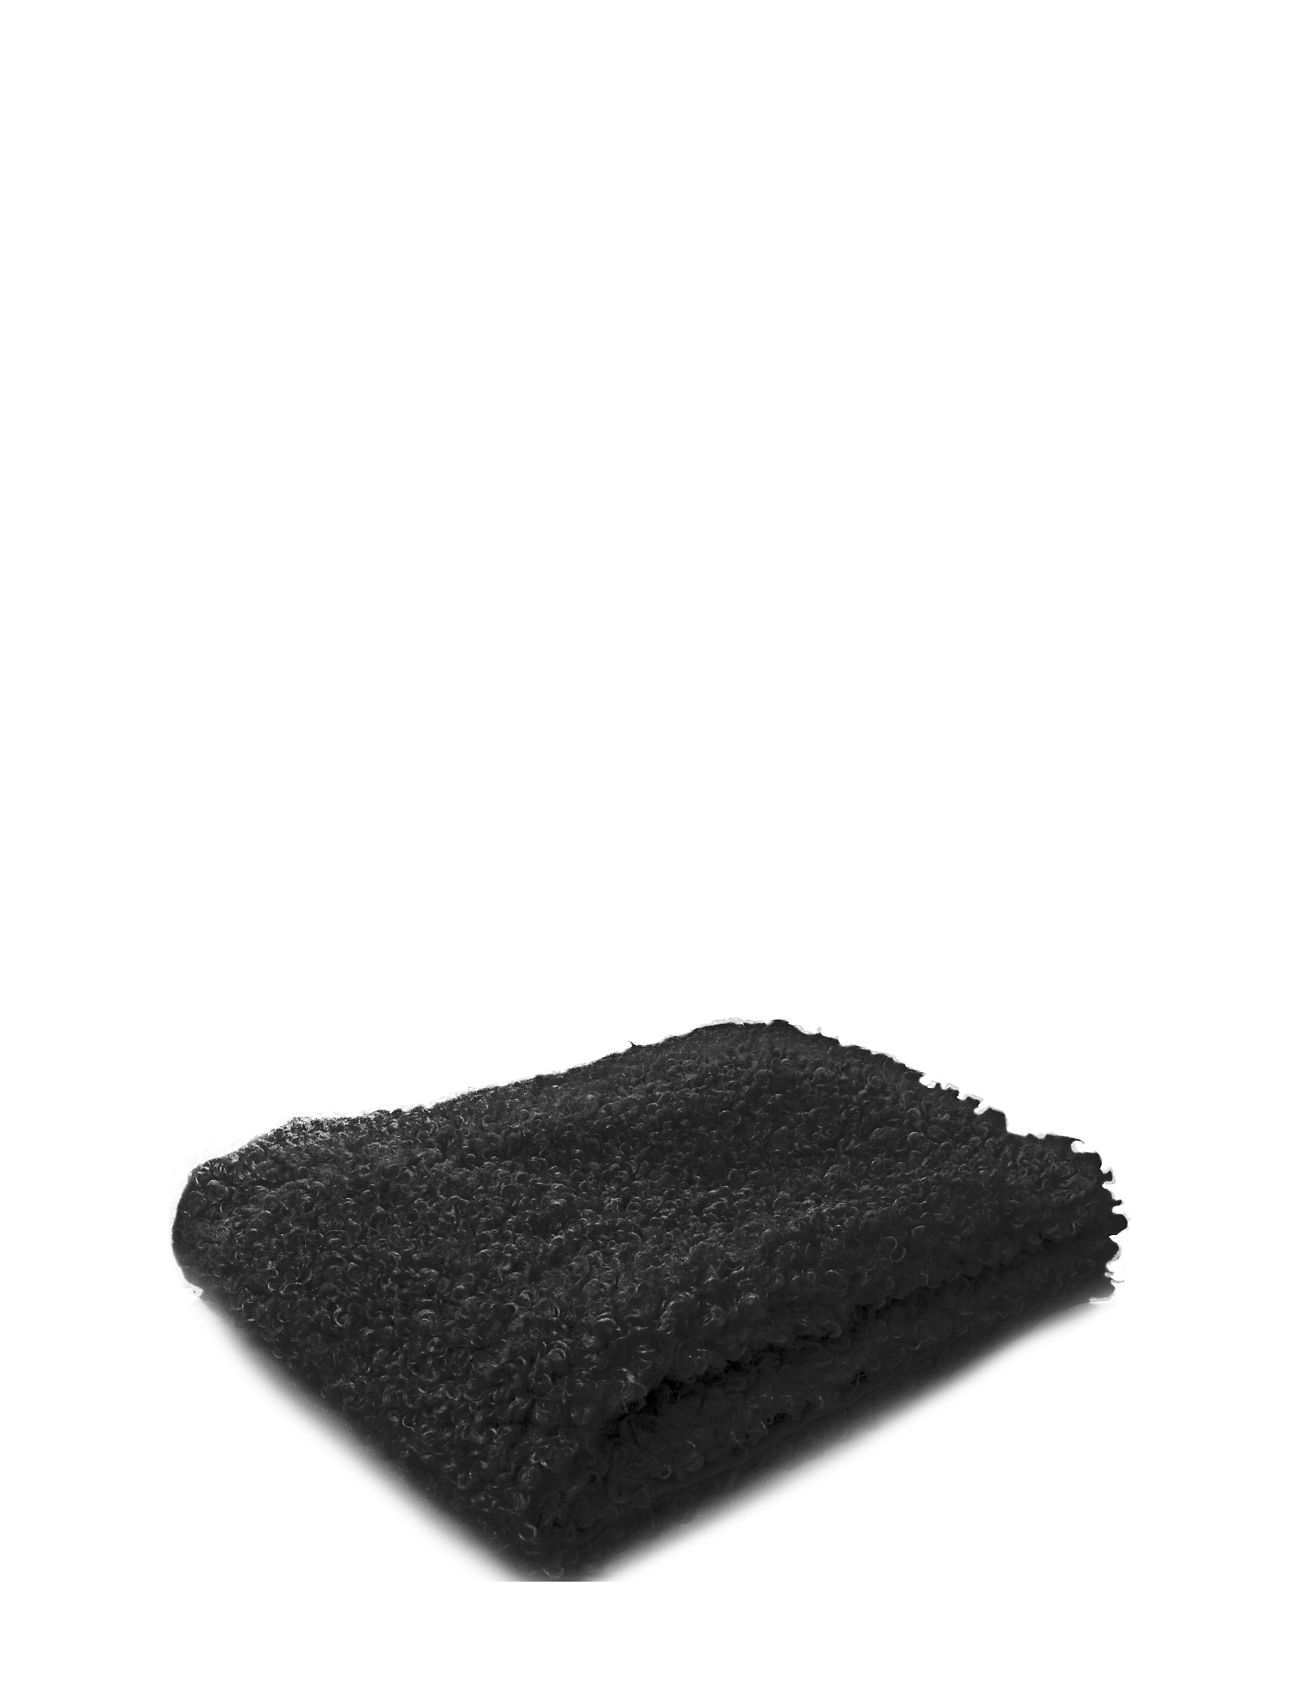 Throw Black Curly Lamb Fake Fur 130X170Cm Home Textiles Cushions & Blankets Blankets & Throws Black Ceannis